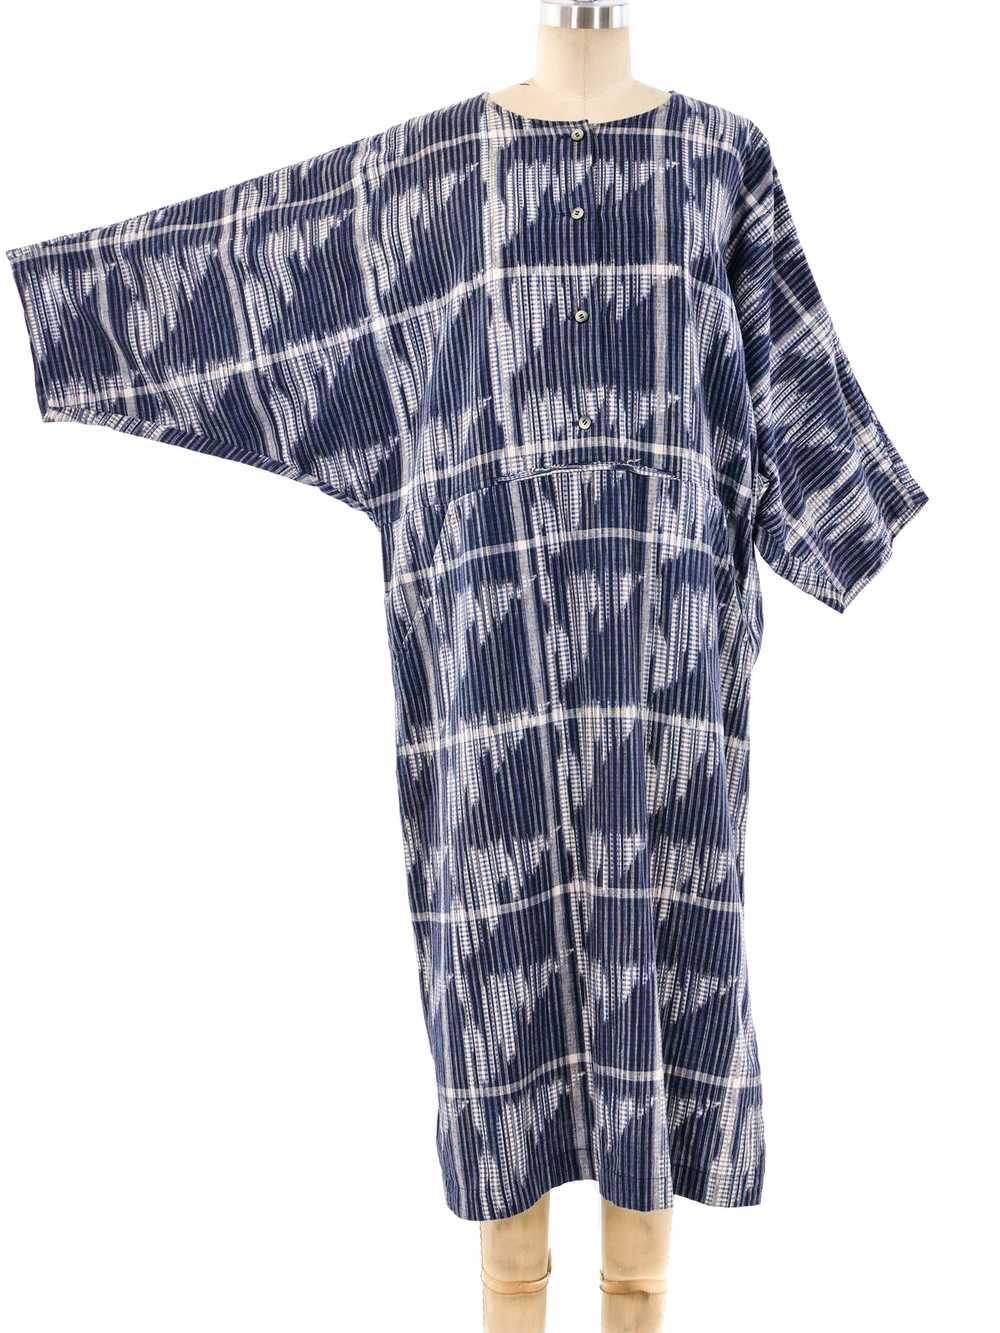 Issey Miyake Ikat Tunic Dress - image 1